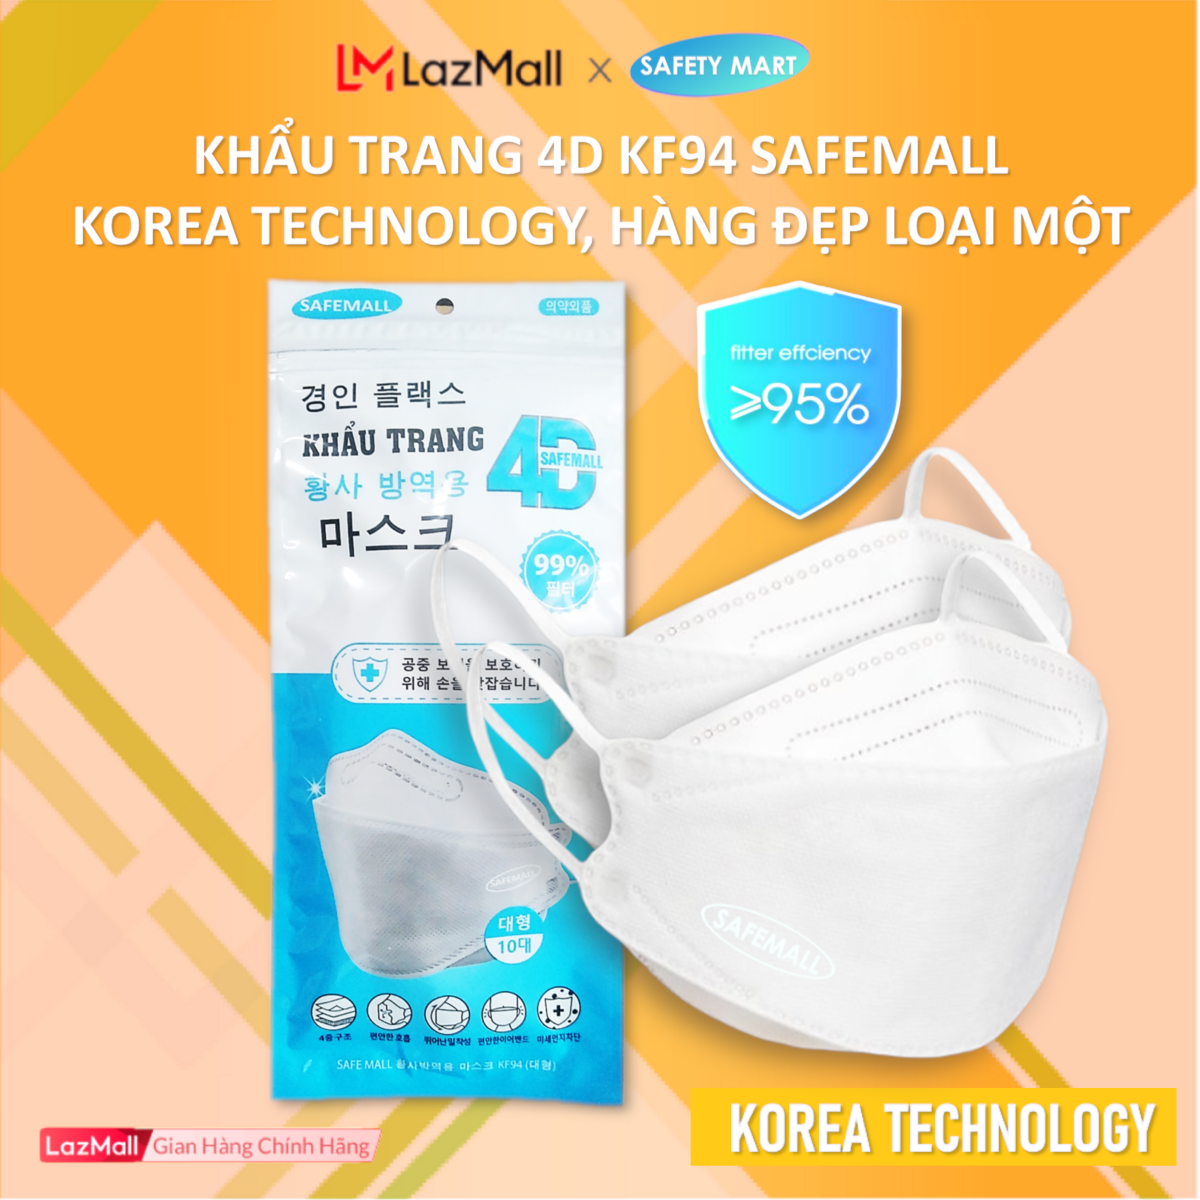 Gói x 1 chiếc Khẩu trang y tế 4D KF94 SafeMall Korea Technology